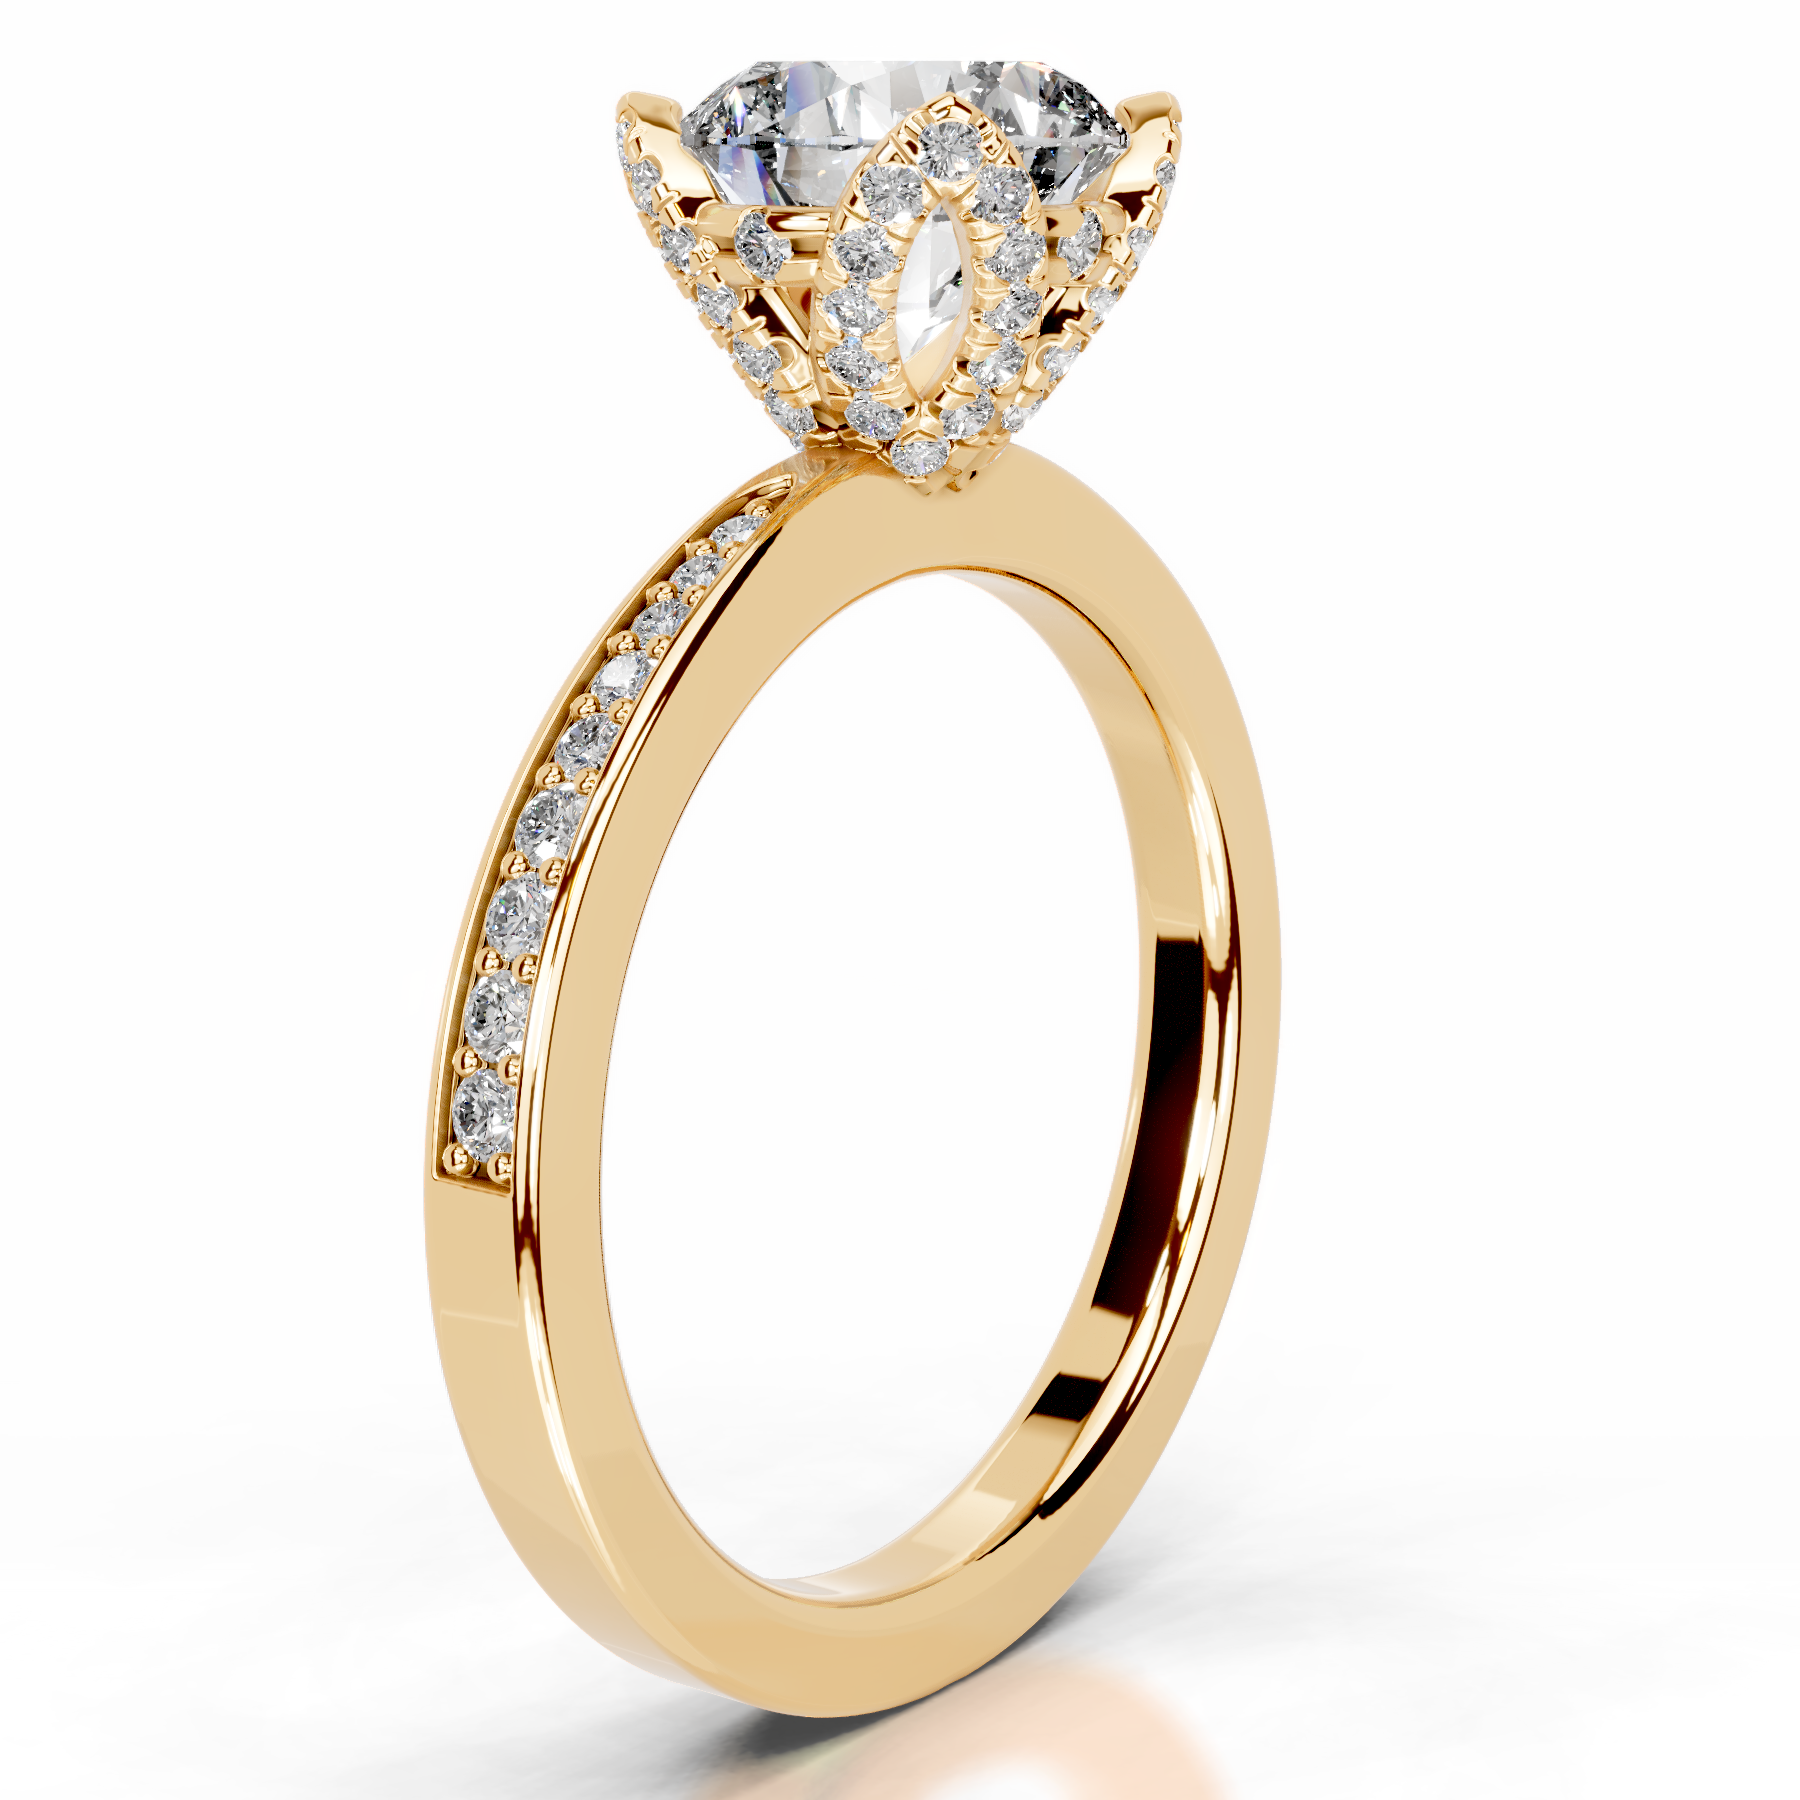 Daria Diamond Engagement Ring   (1.85 Carat) -18K Yellow Gold